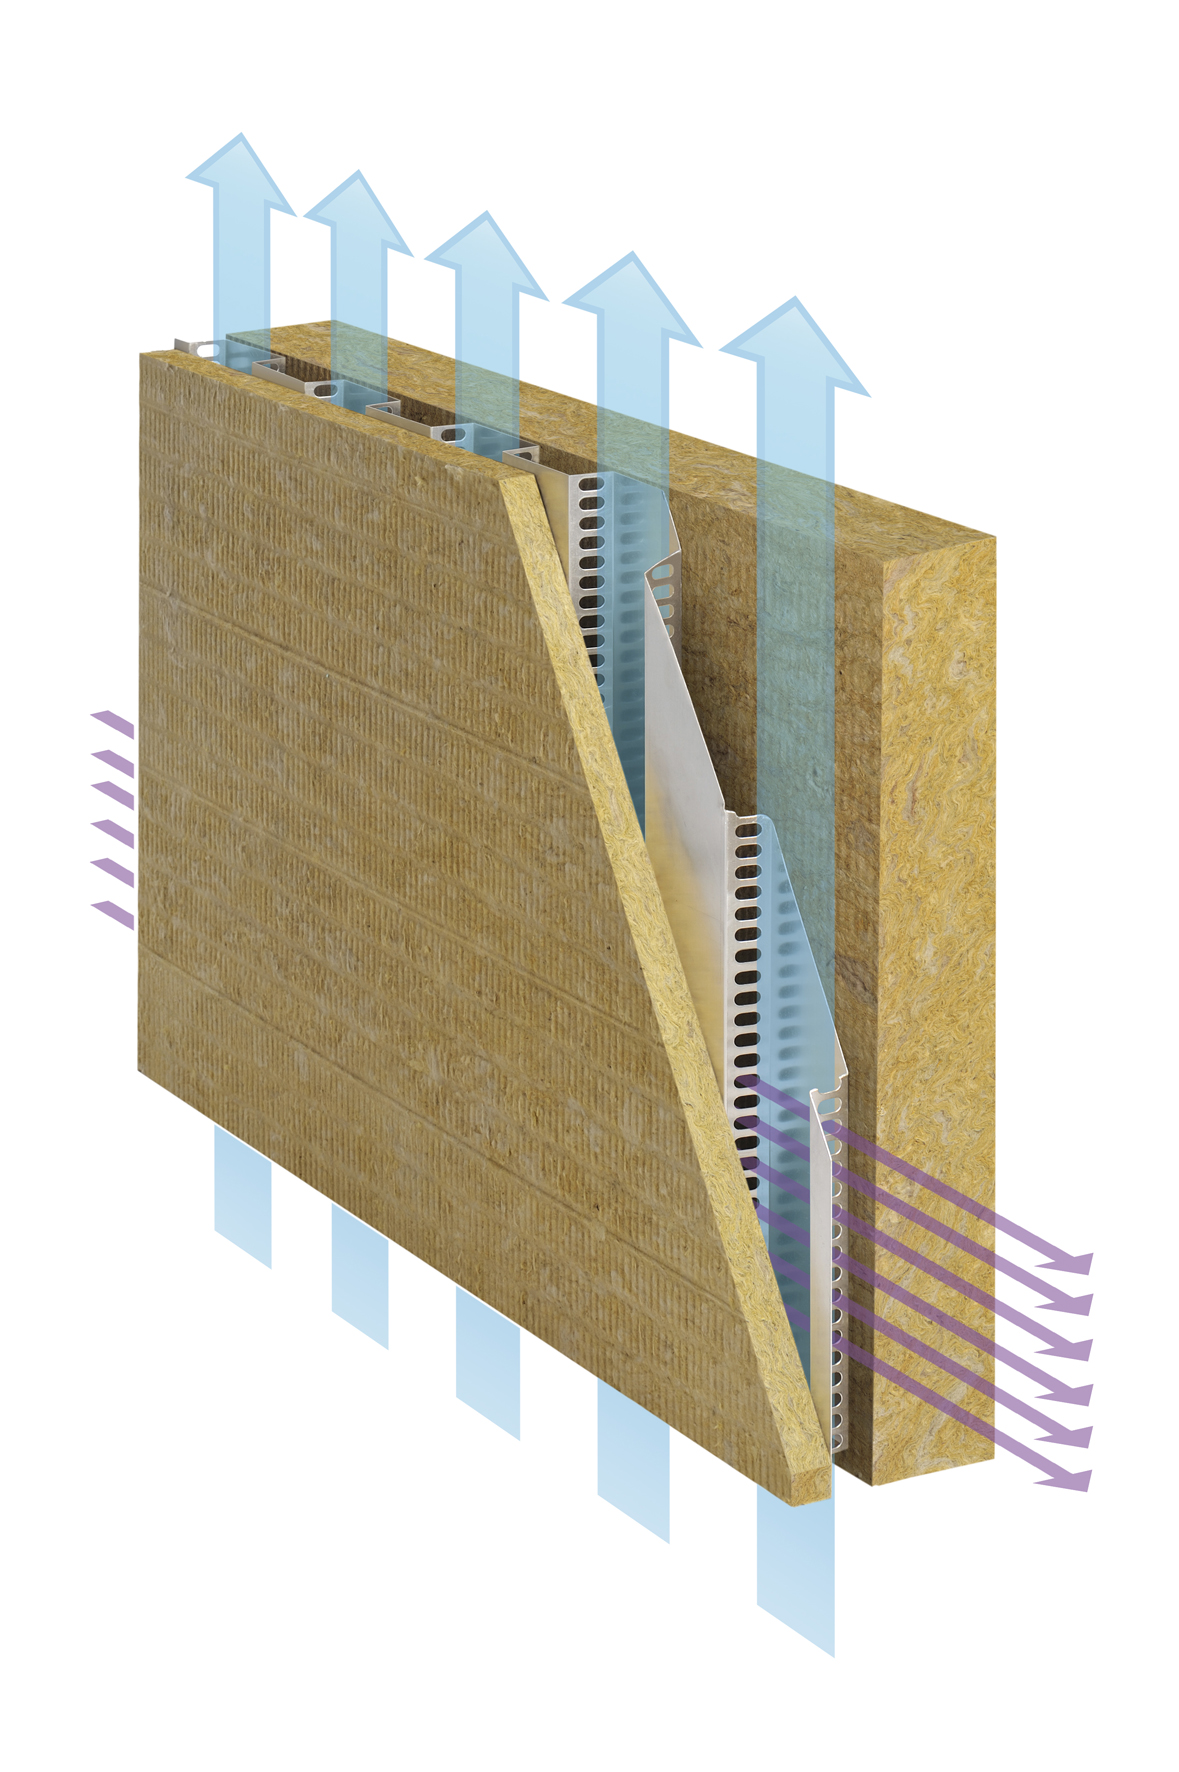 Isolamento termico a cappotto e parete ventilata: due funzioni in un singolo sistema integrato calce01